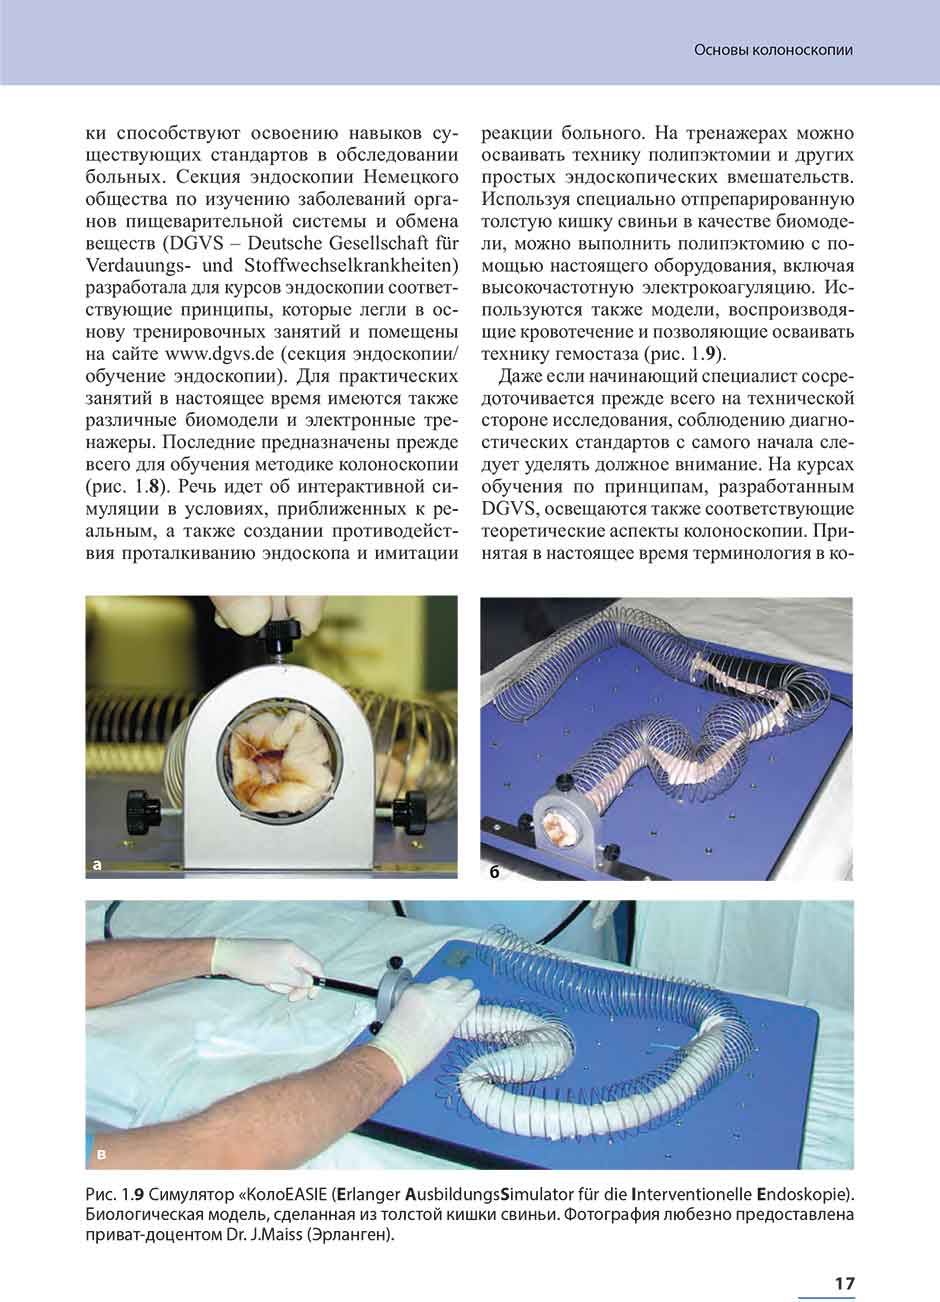 Рис. 1.9 Симулятор «KonoEASIE (Erlanger AusbildungsSimulatorfur die Interventionelle Endoskopie).